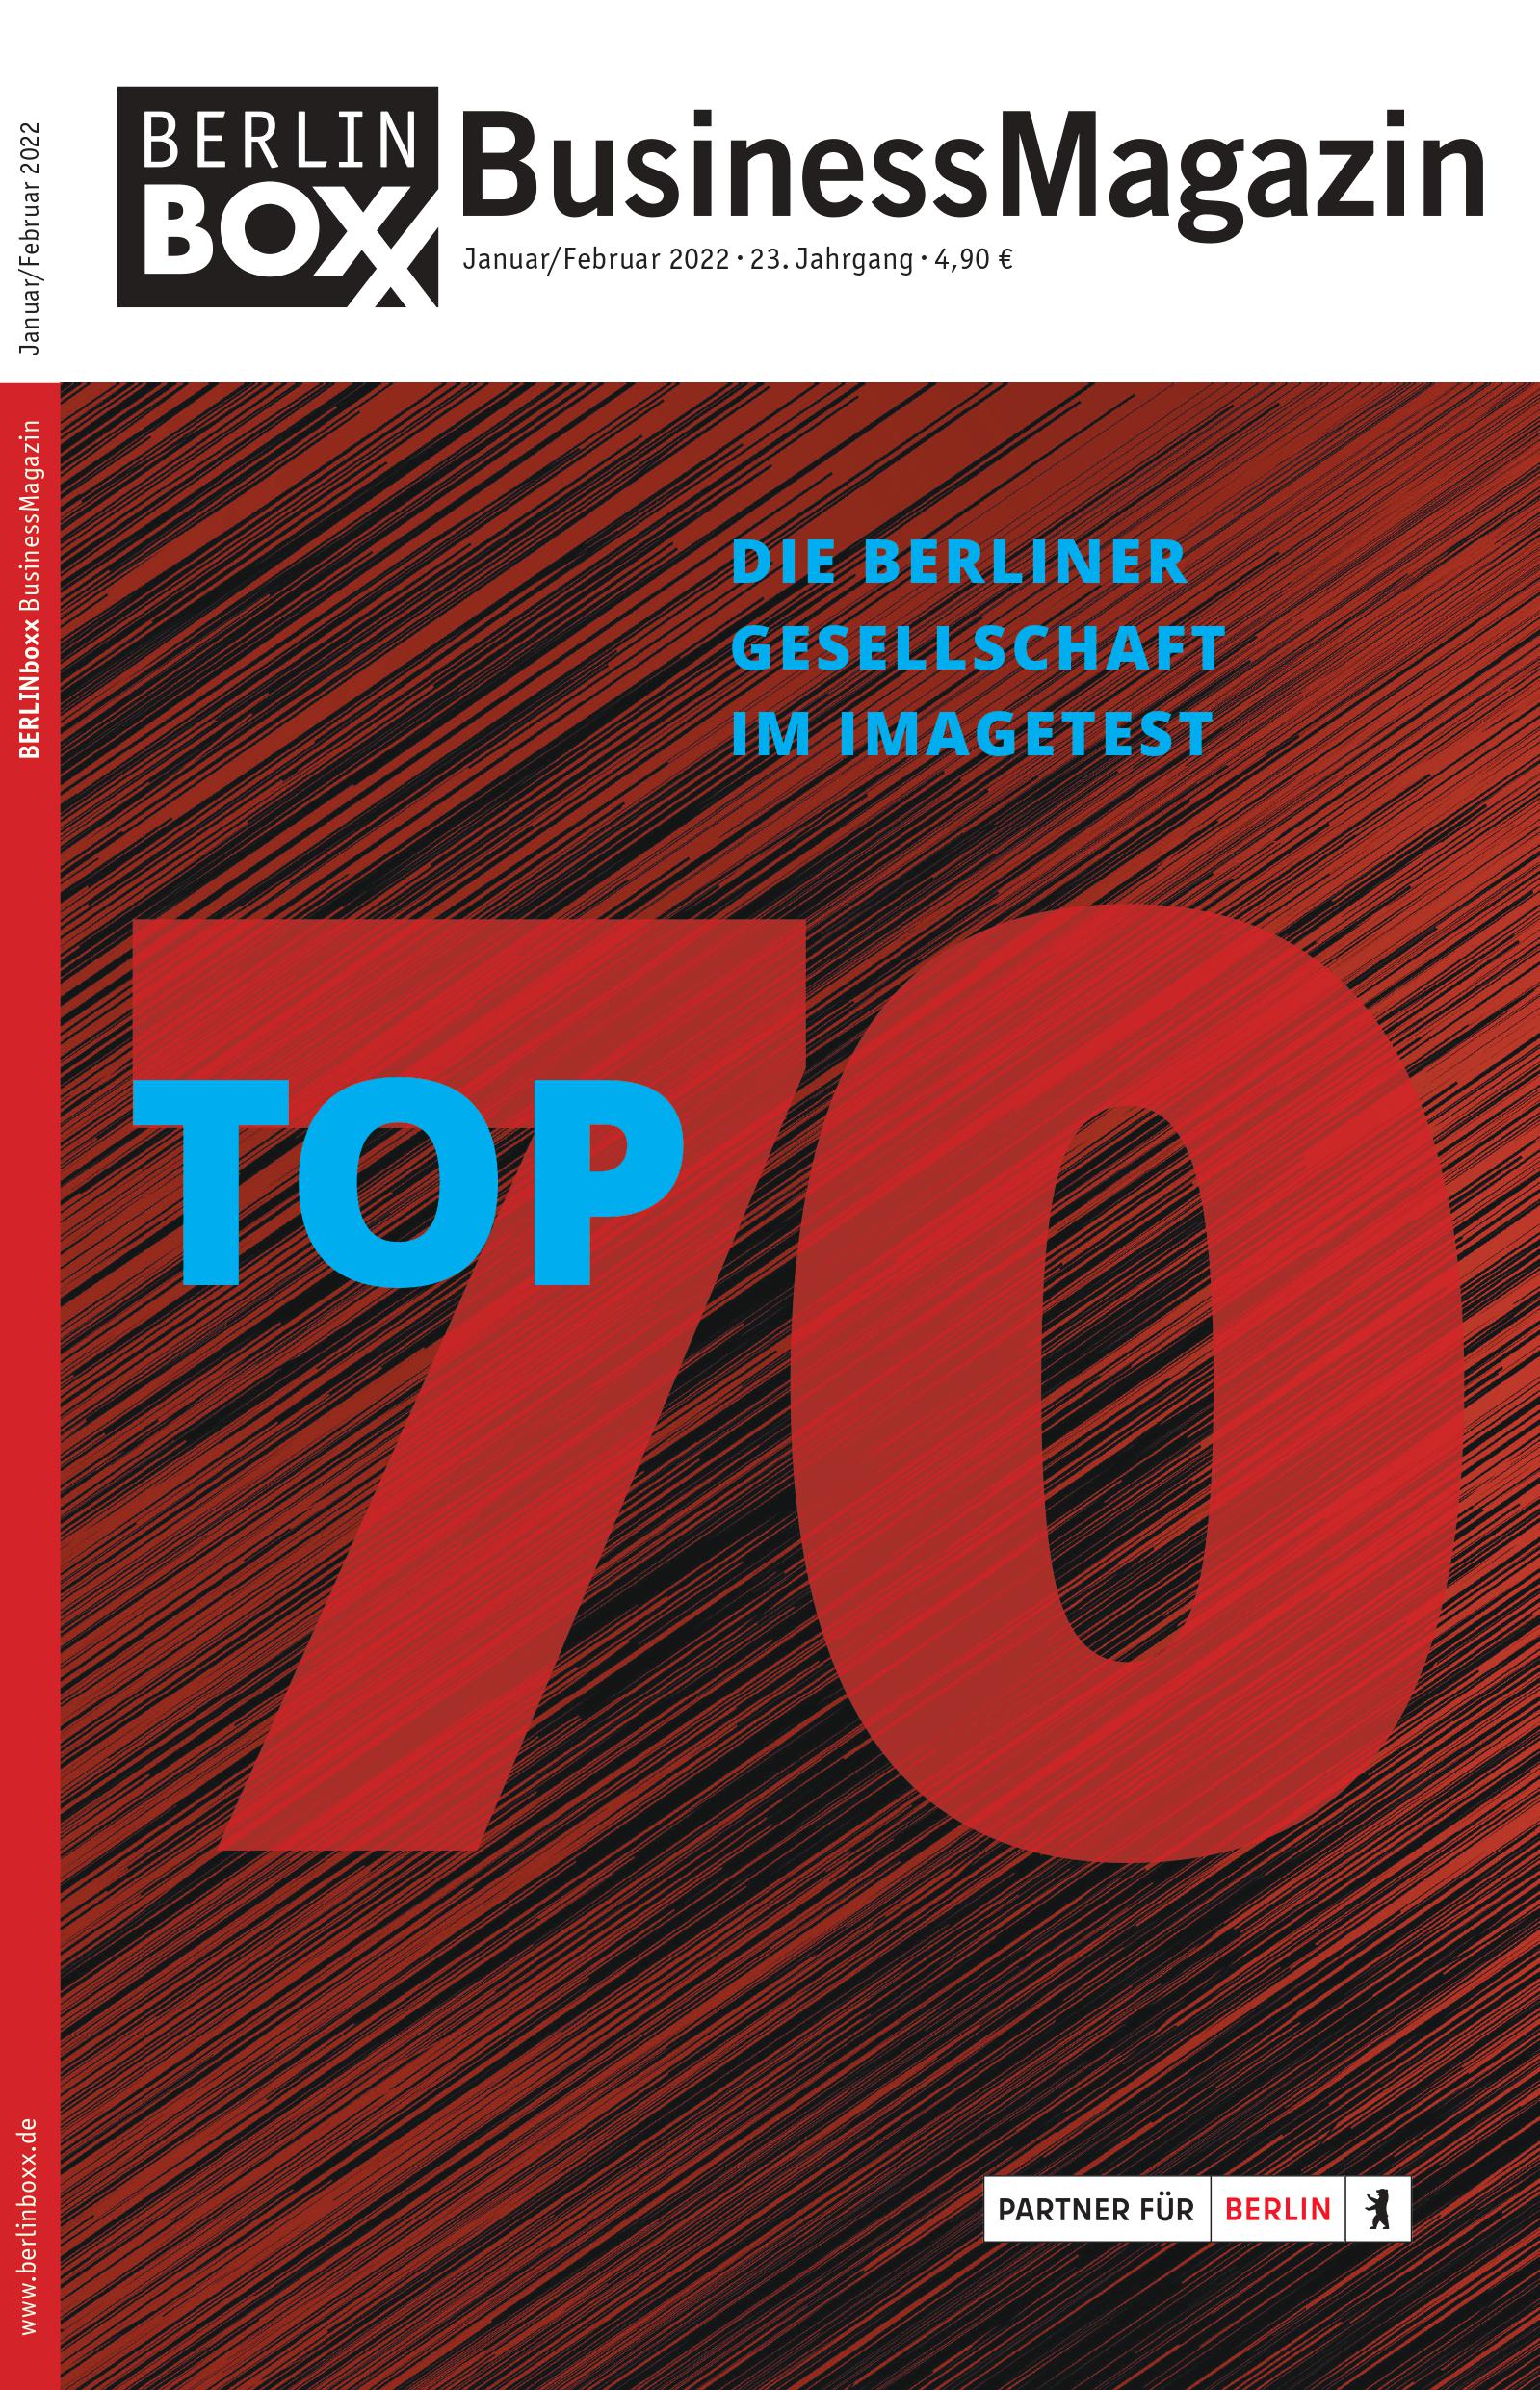 Top 70 Die Berliner Gesellschaft im Imagetest